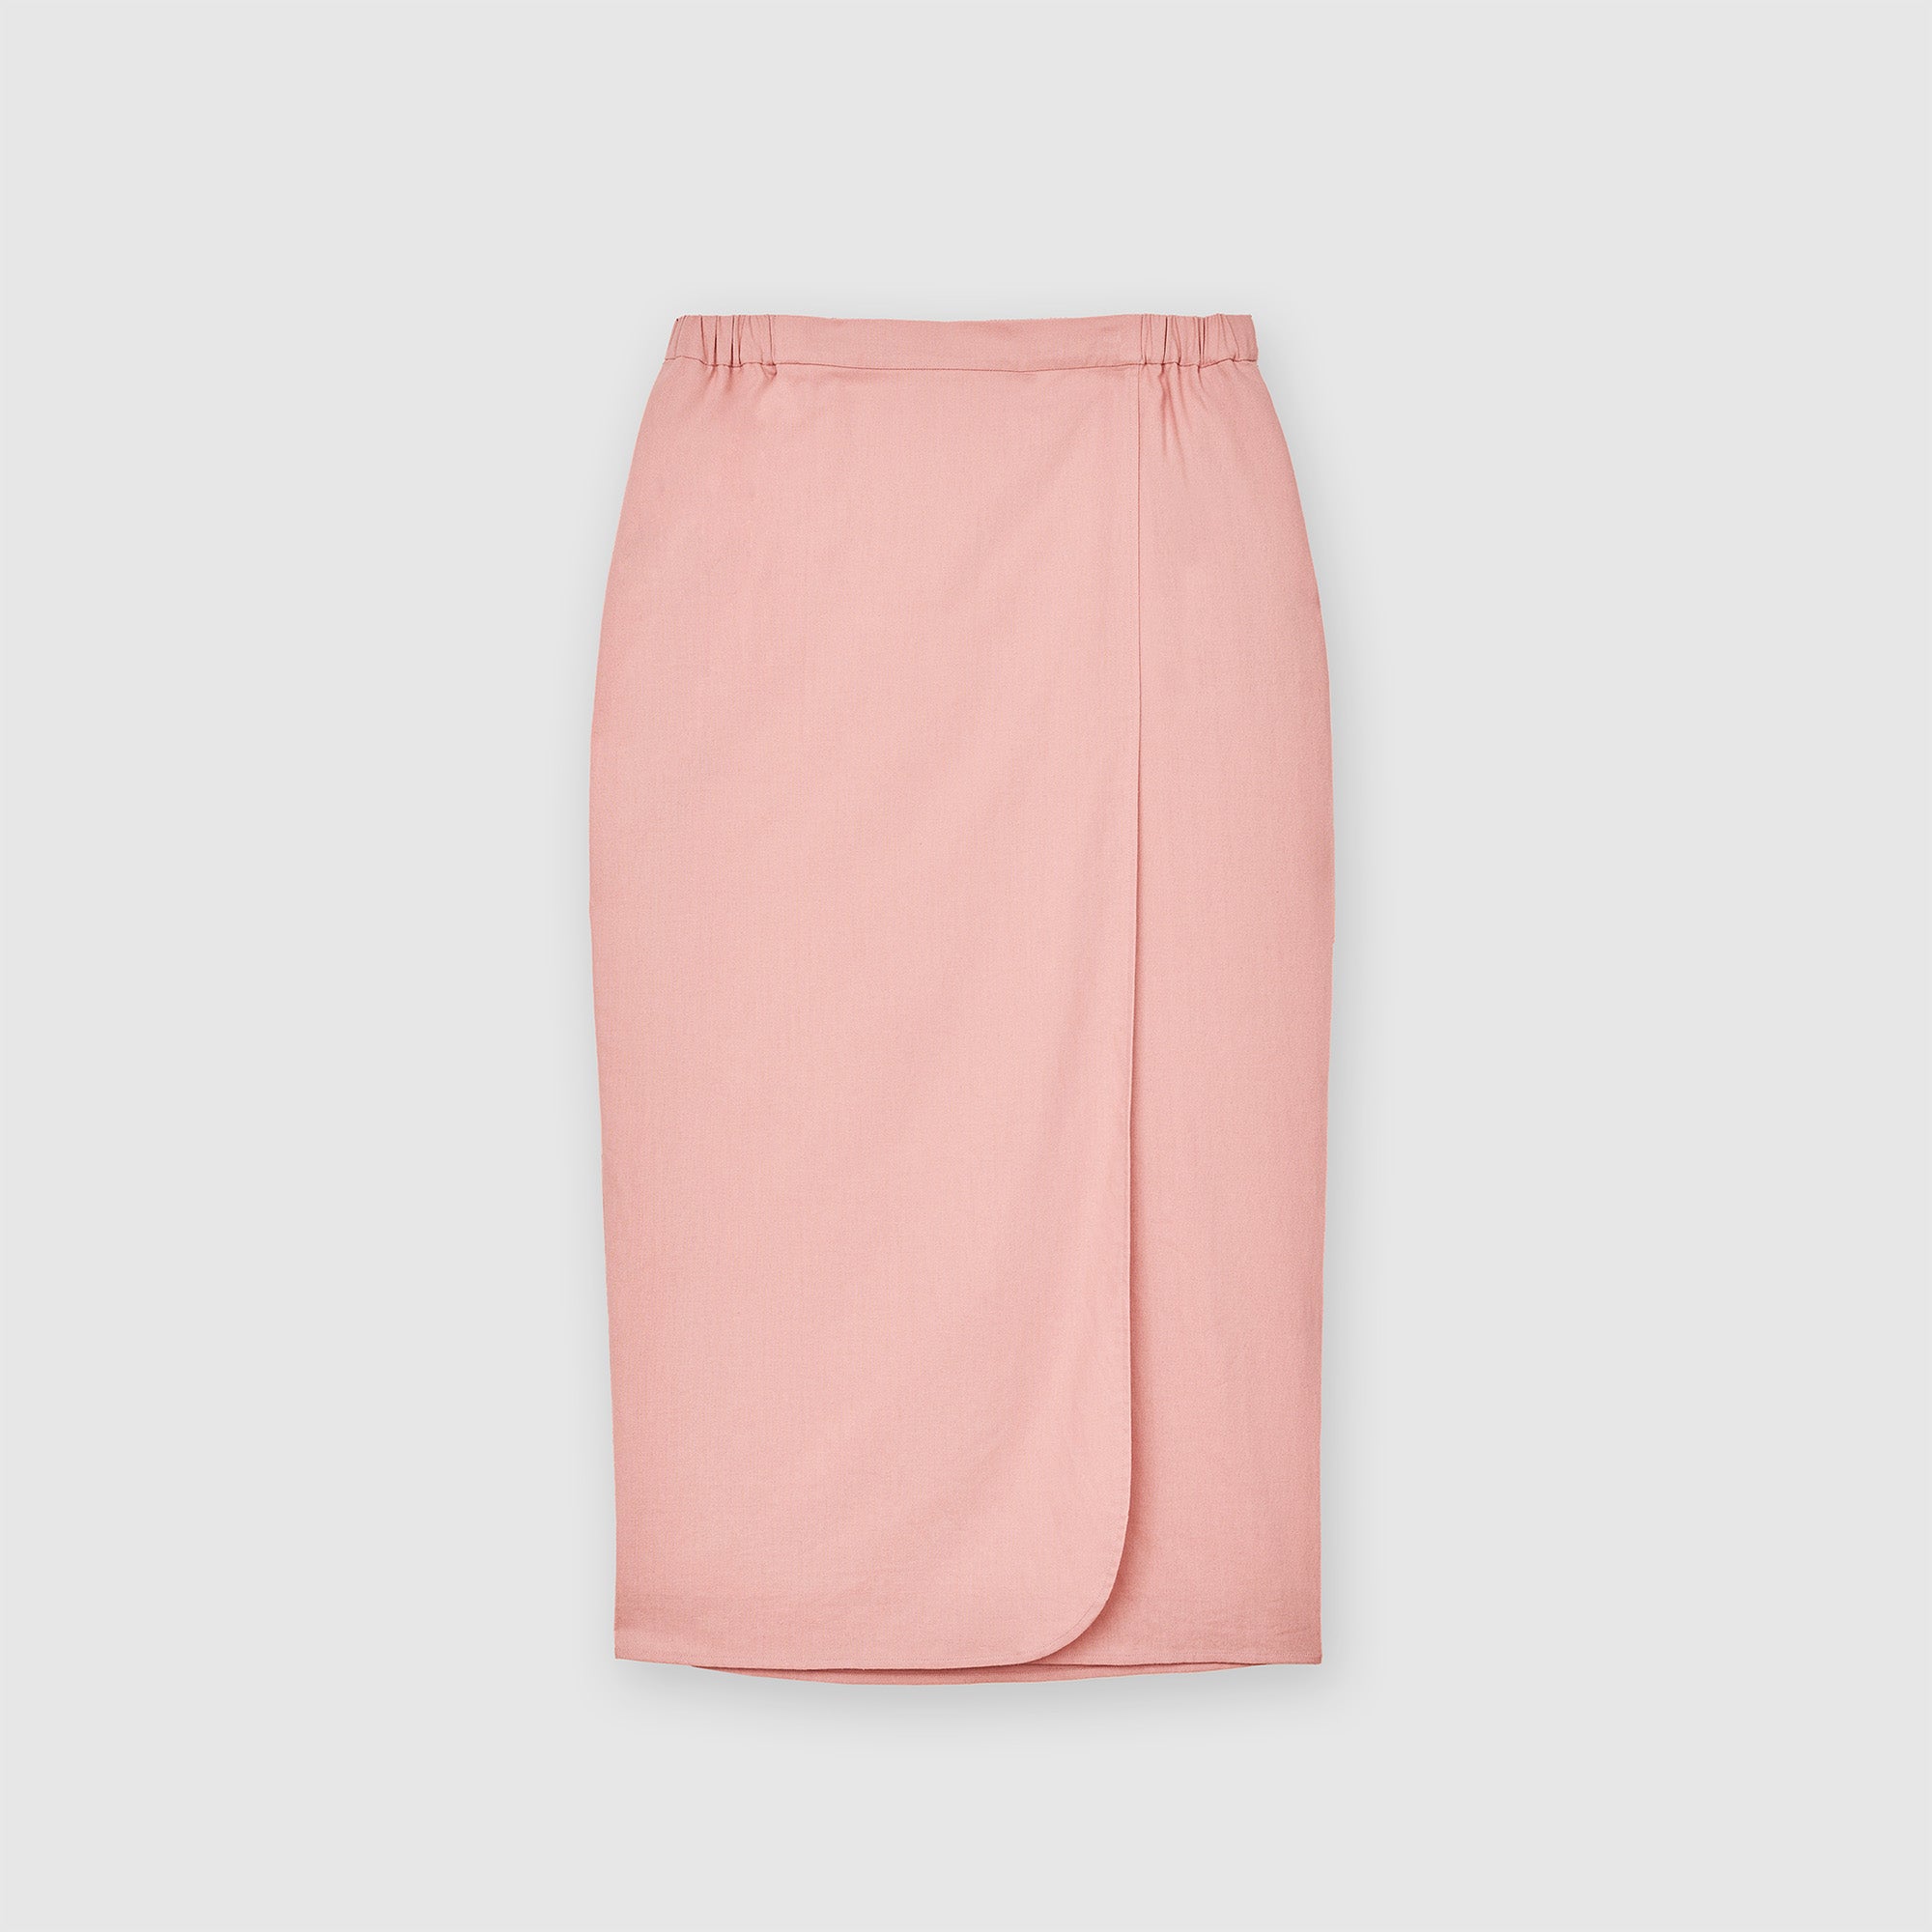 Linen Overlap Skirt